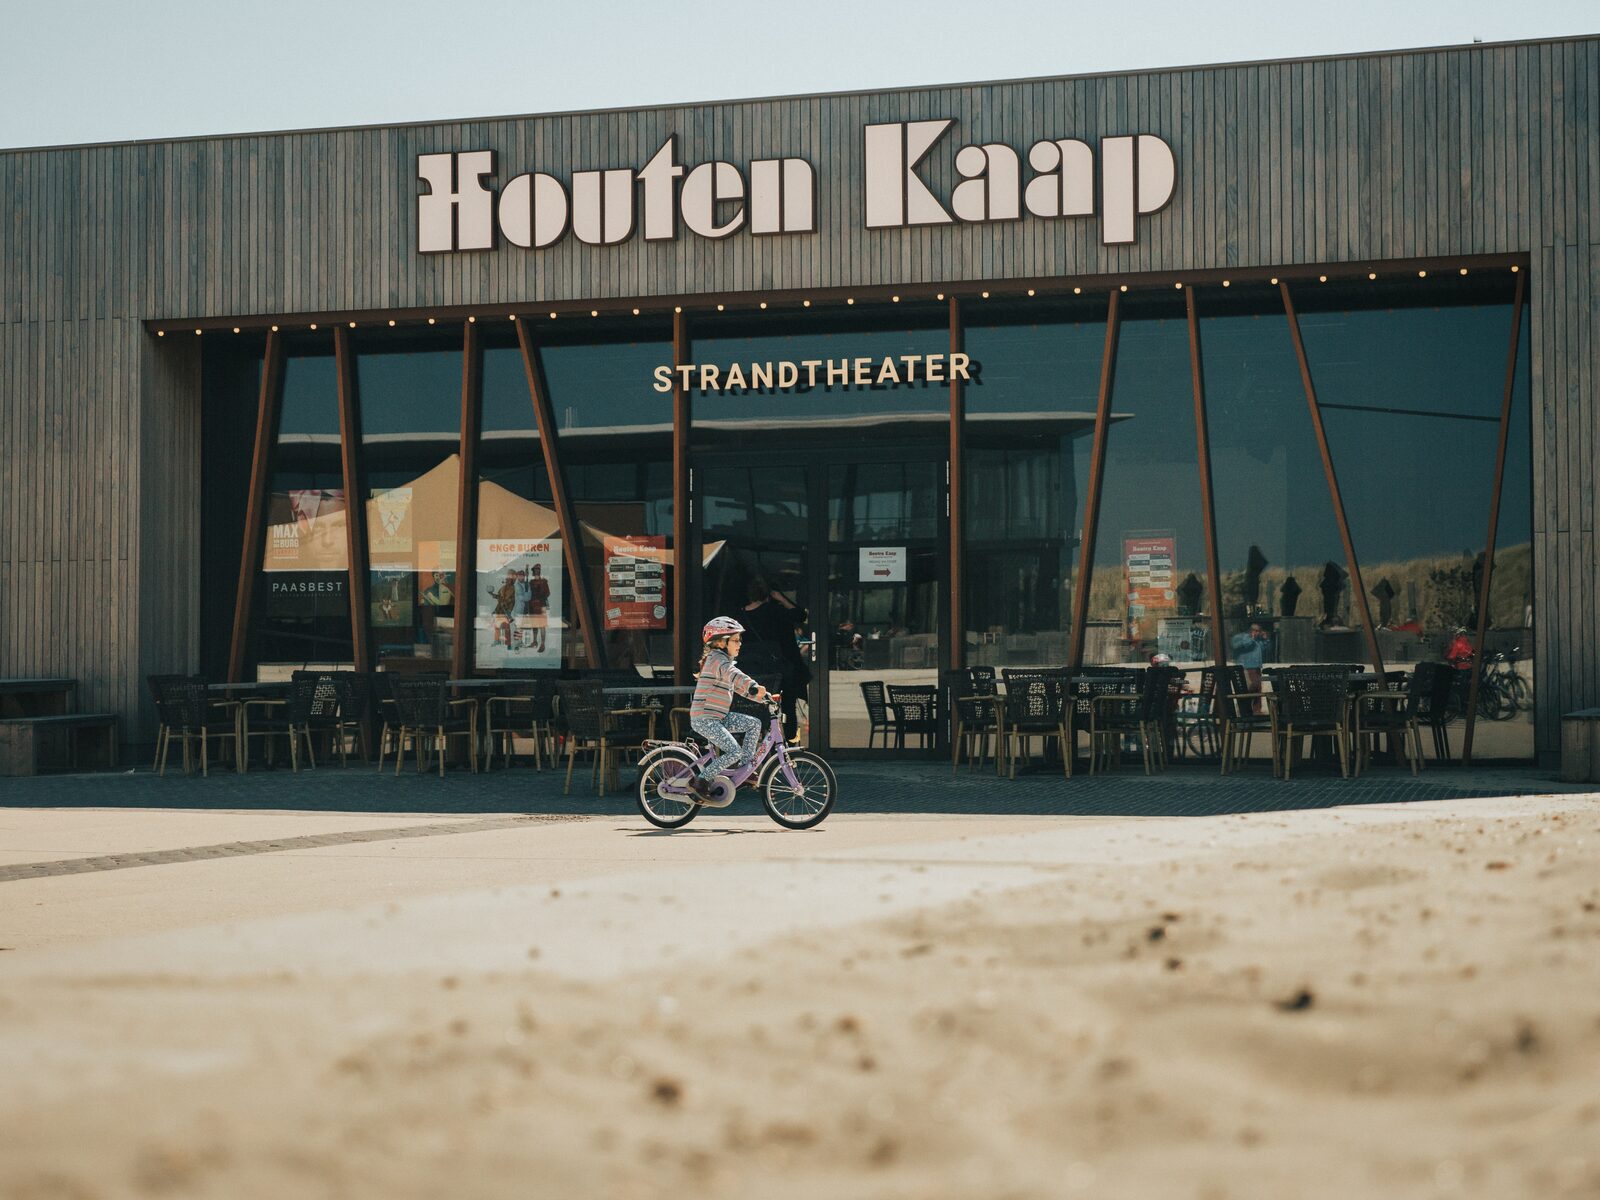 Strandtheater Houten Kaap in Ouddorp